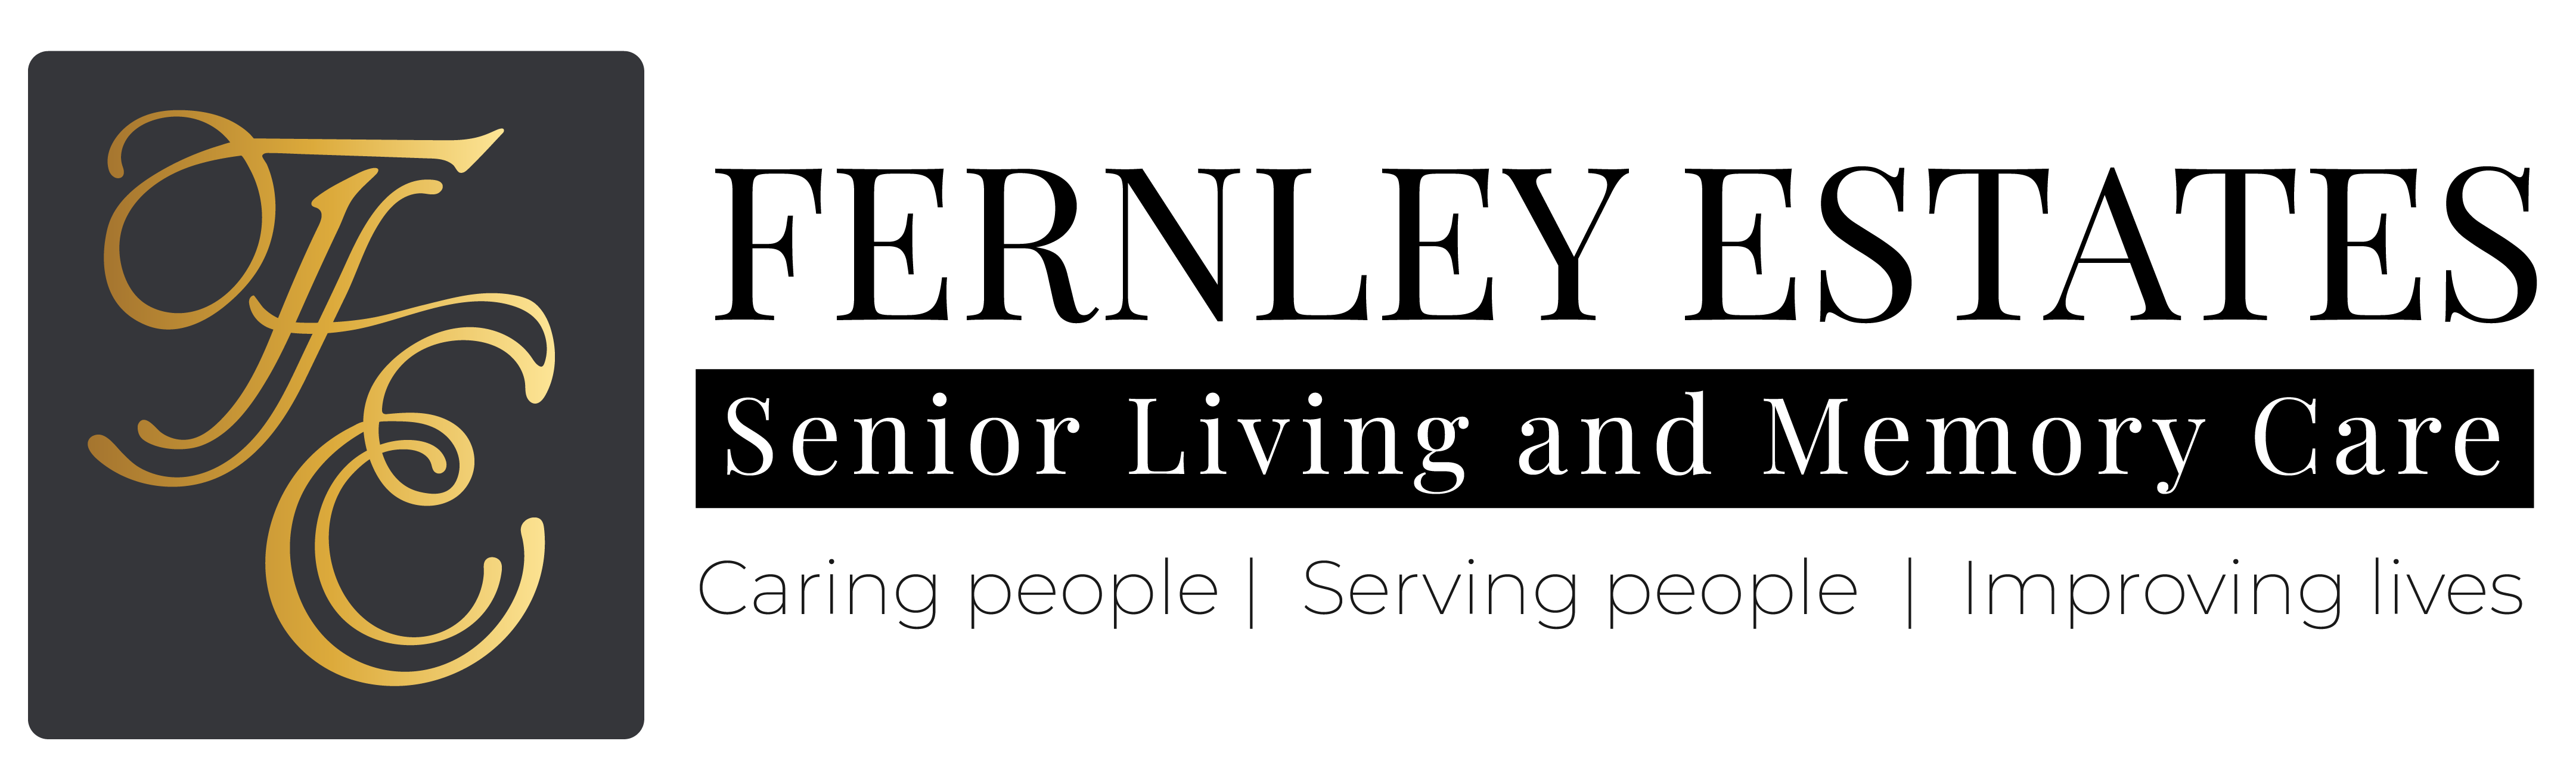 Senior living and memory care logo.